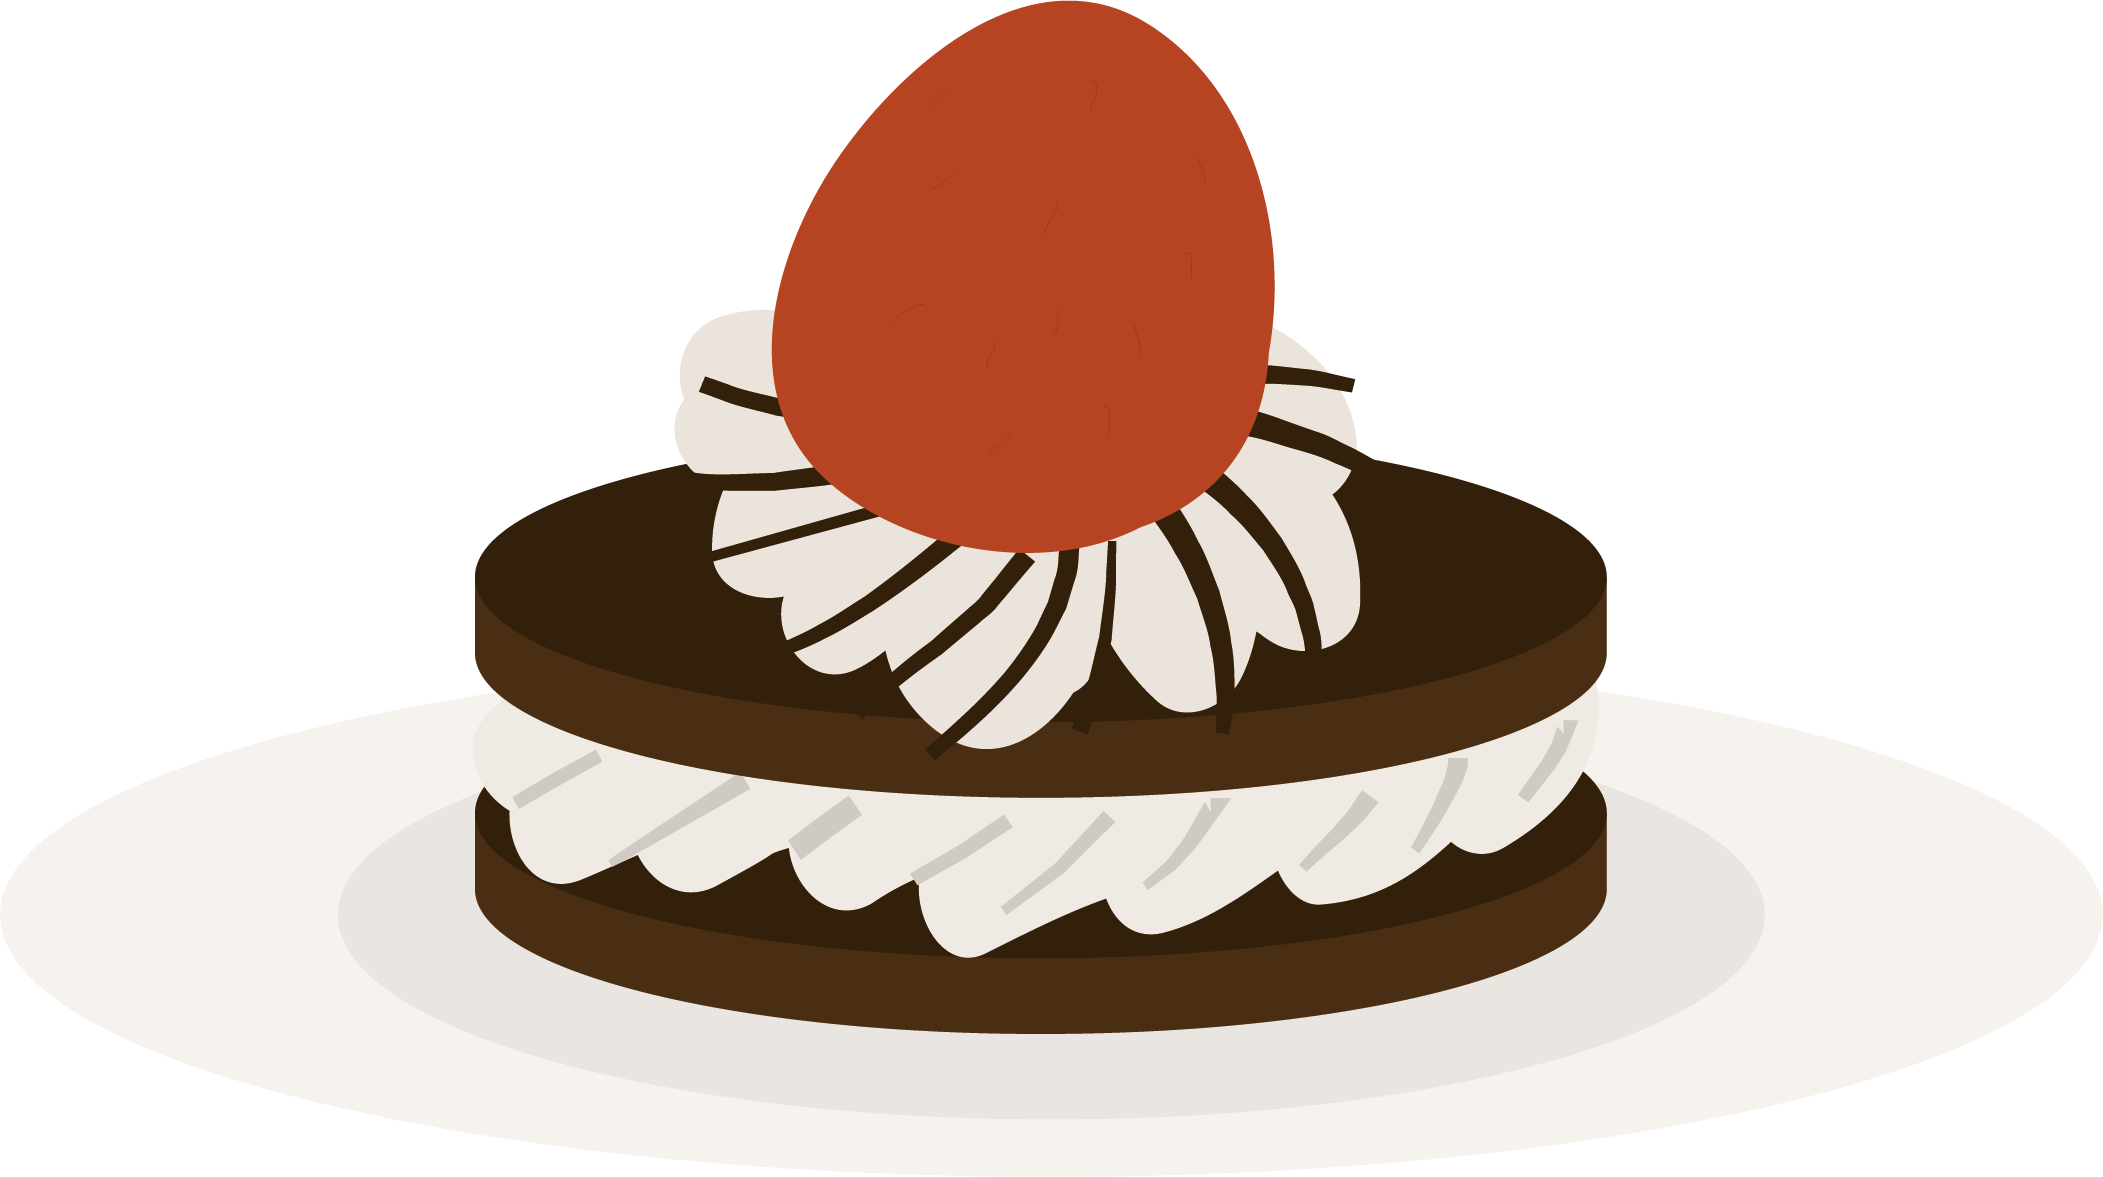 Chocolate Cake Torte - Chocolate Cake Torte (2103x1177)